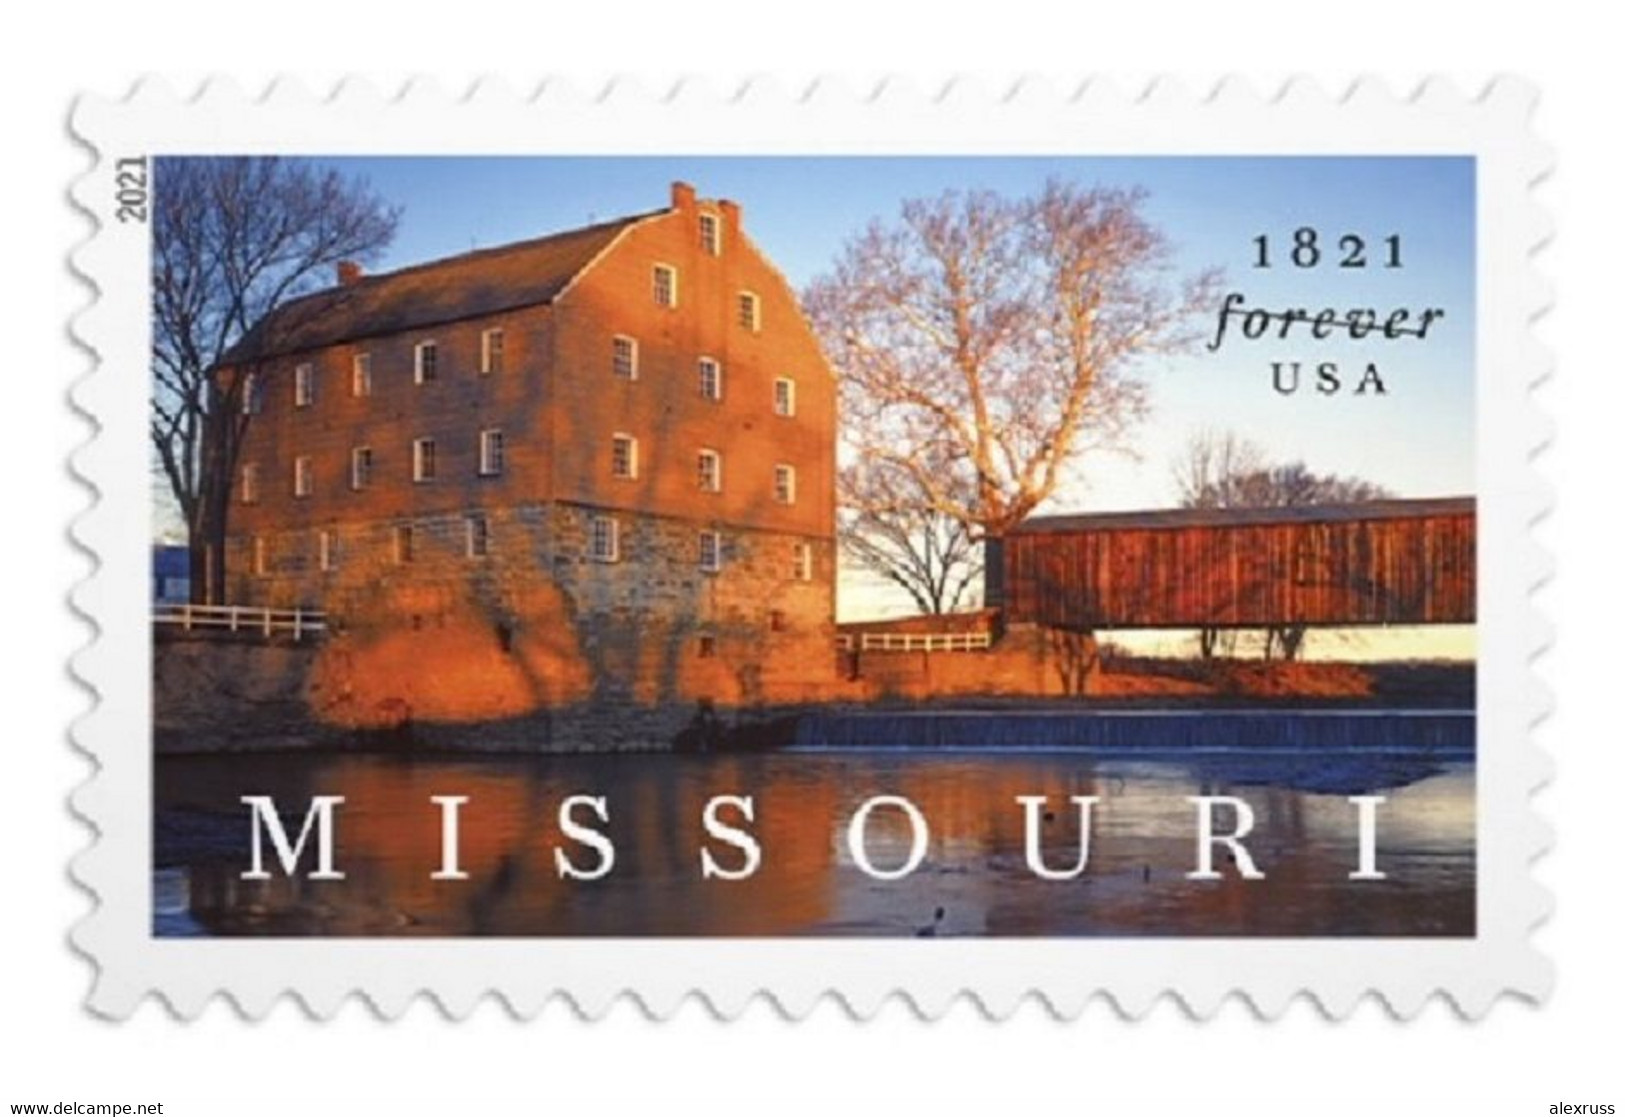 US 2021 Missouri Statehood, Forever Stamps, Scott # 5626 ,VF MNH**,,USPS SEALED !! - Ganze Bögen